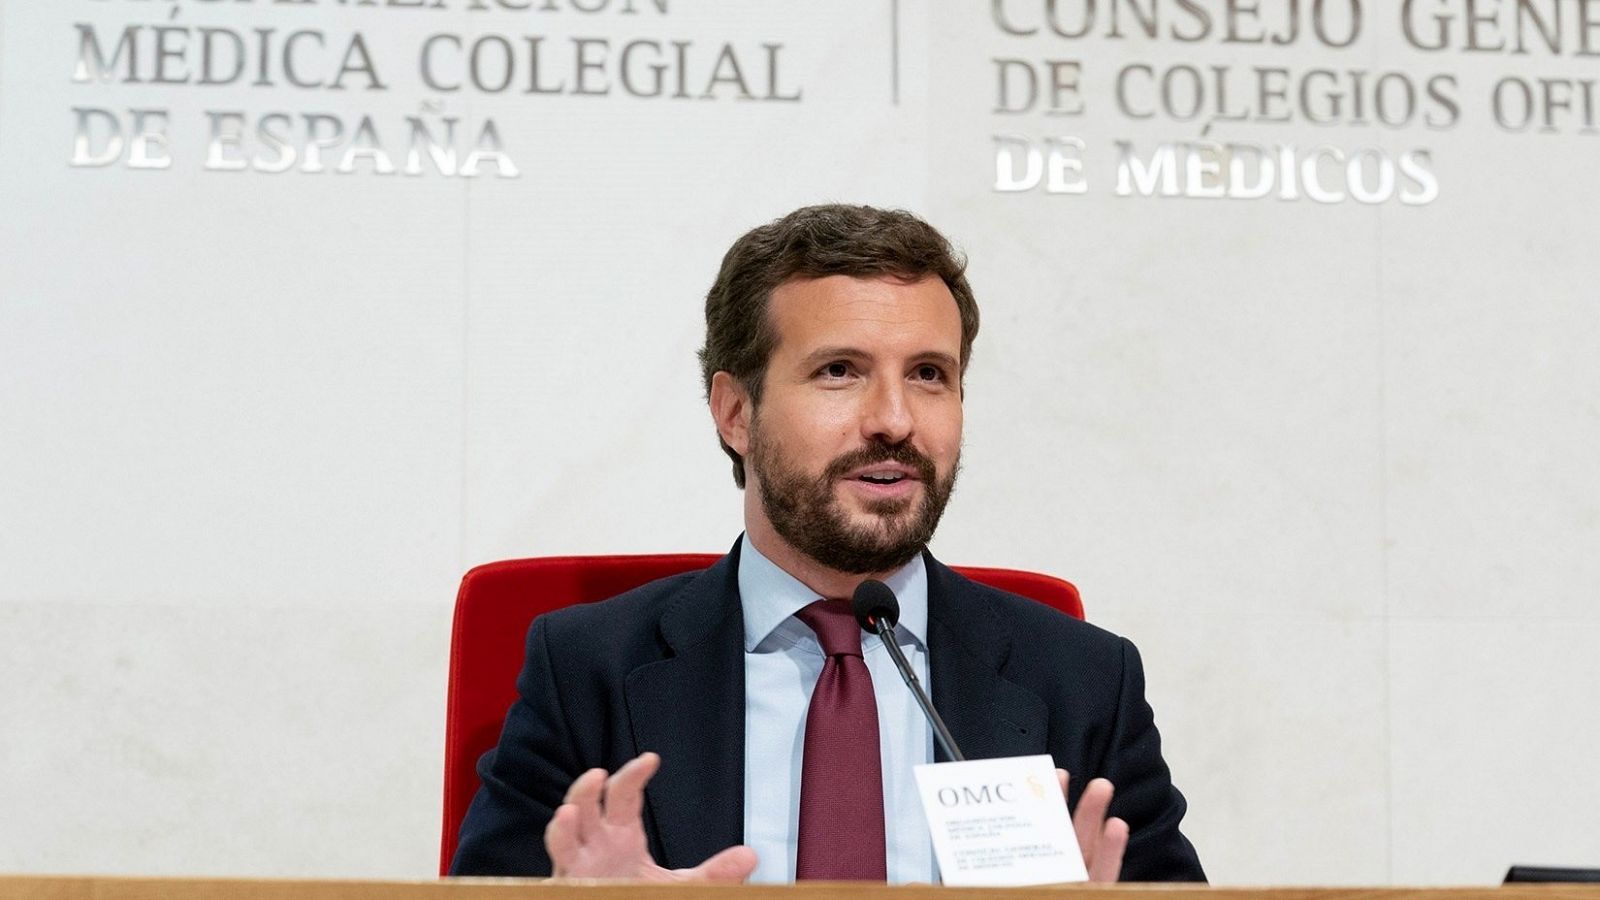 El líderl PP, Pablo Casado, interviene en un acto en de la Organización Médico Colegial de España